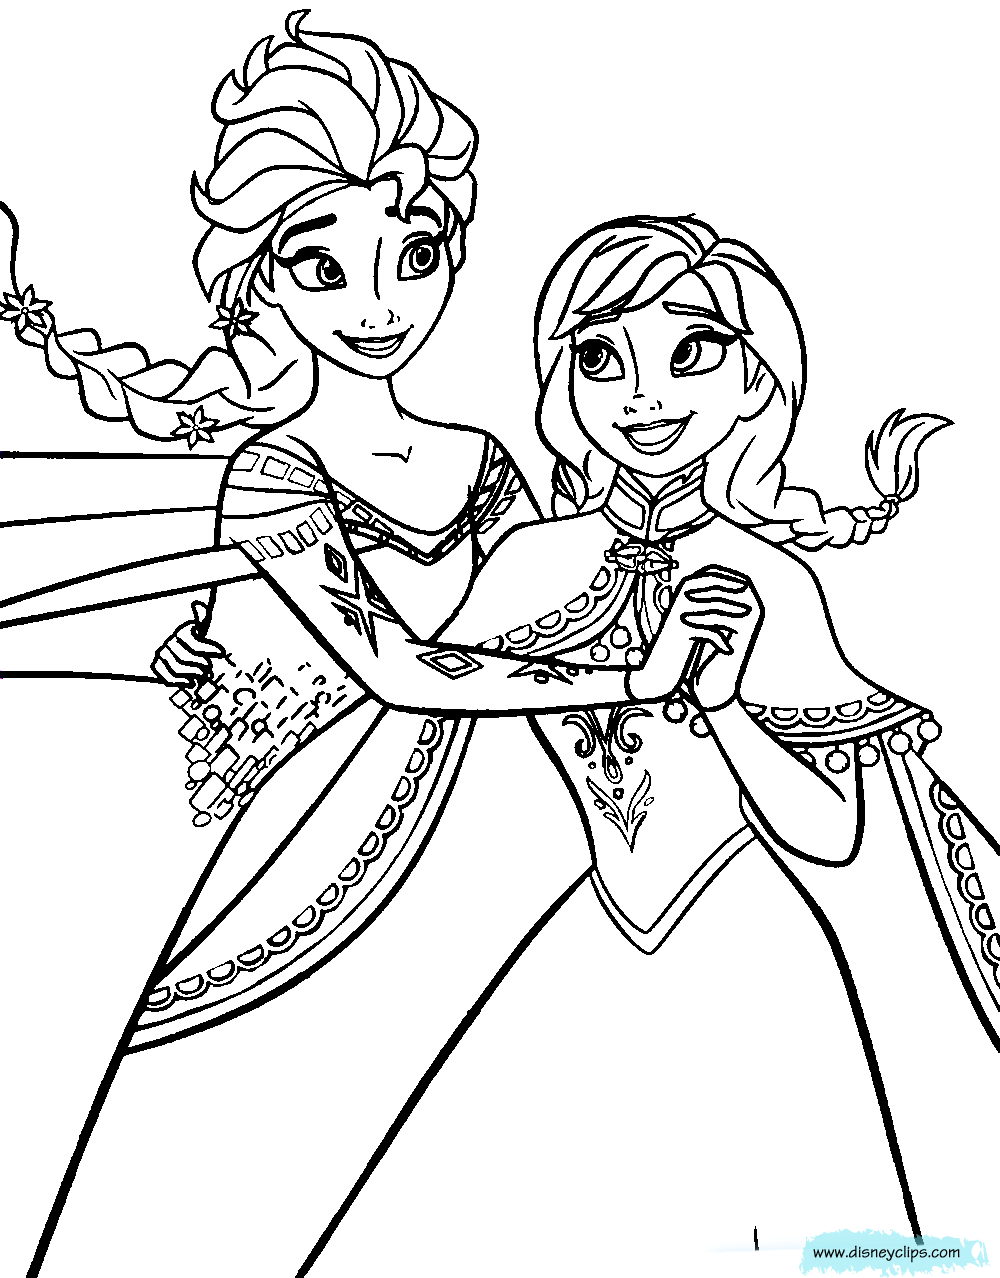 Bé tập tô màu công chúa Elsa và công chúa Anna